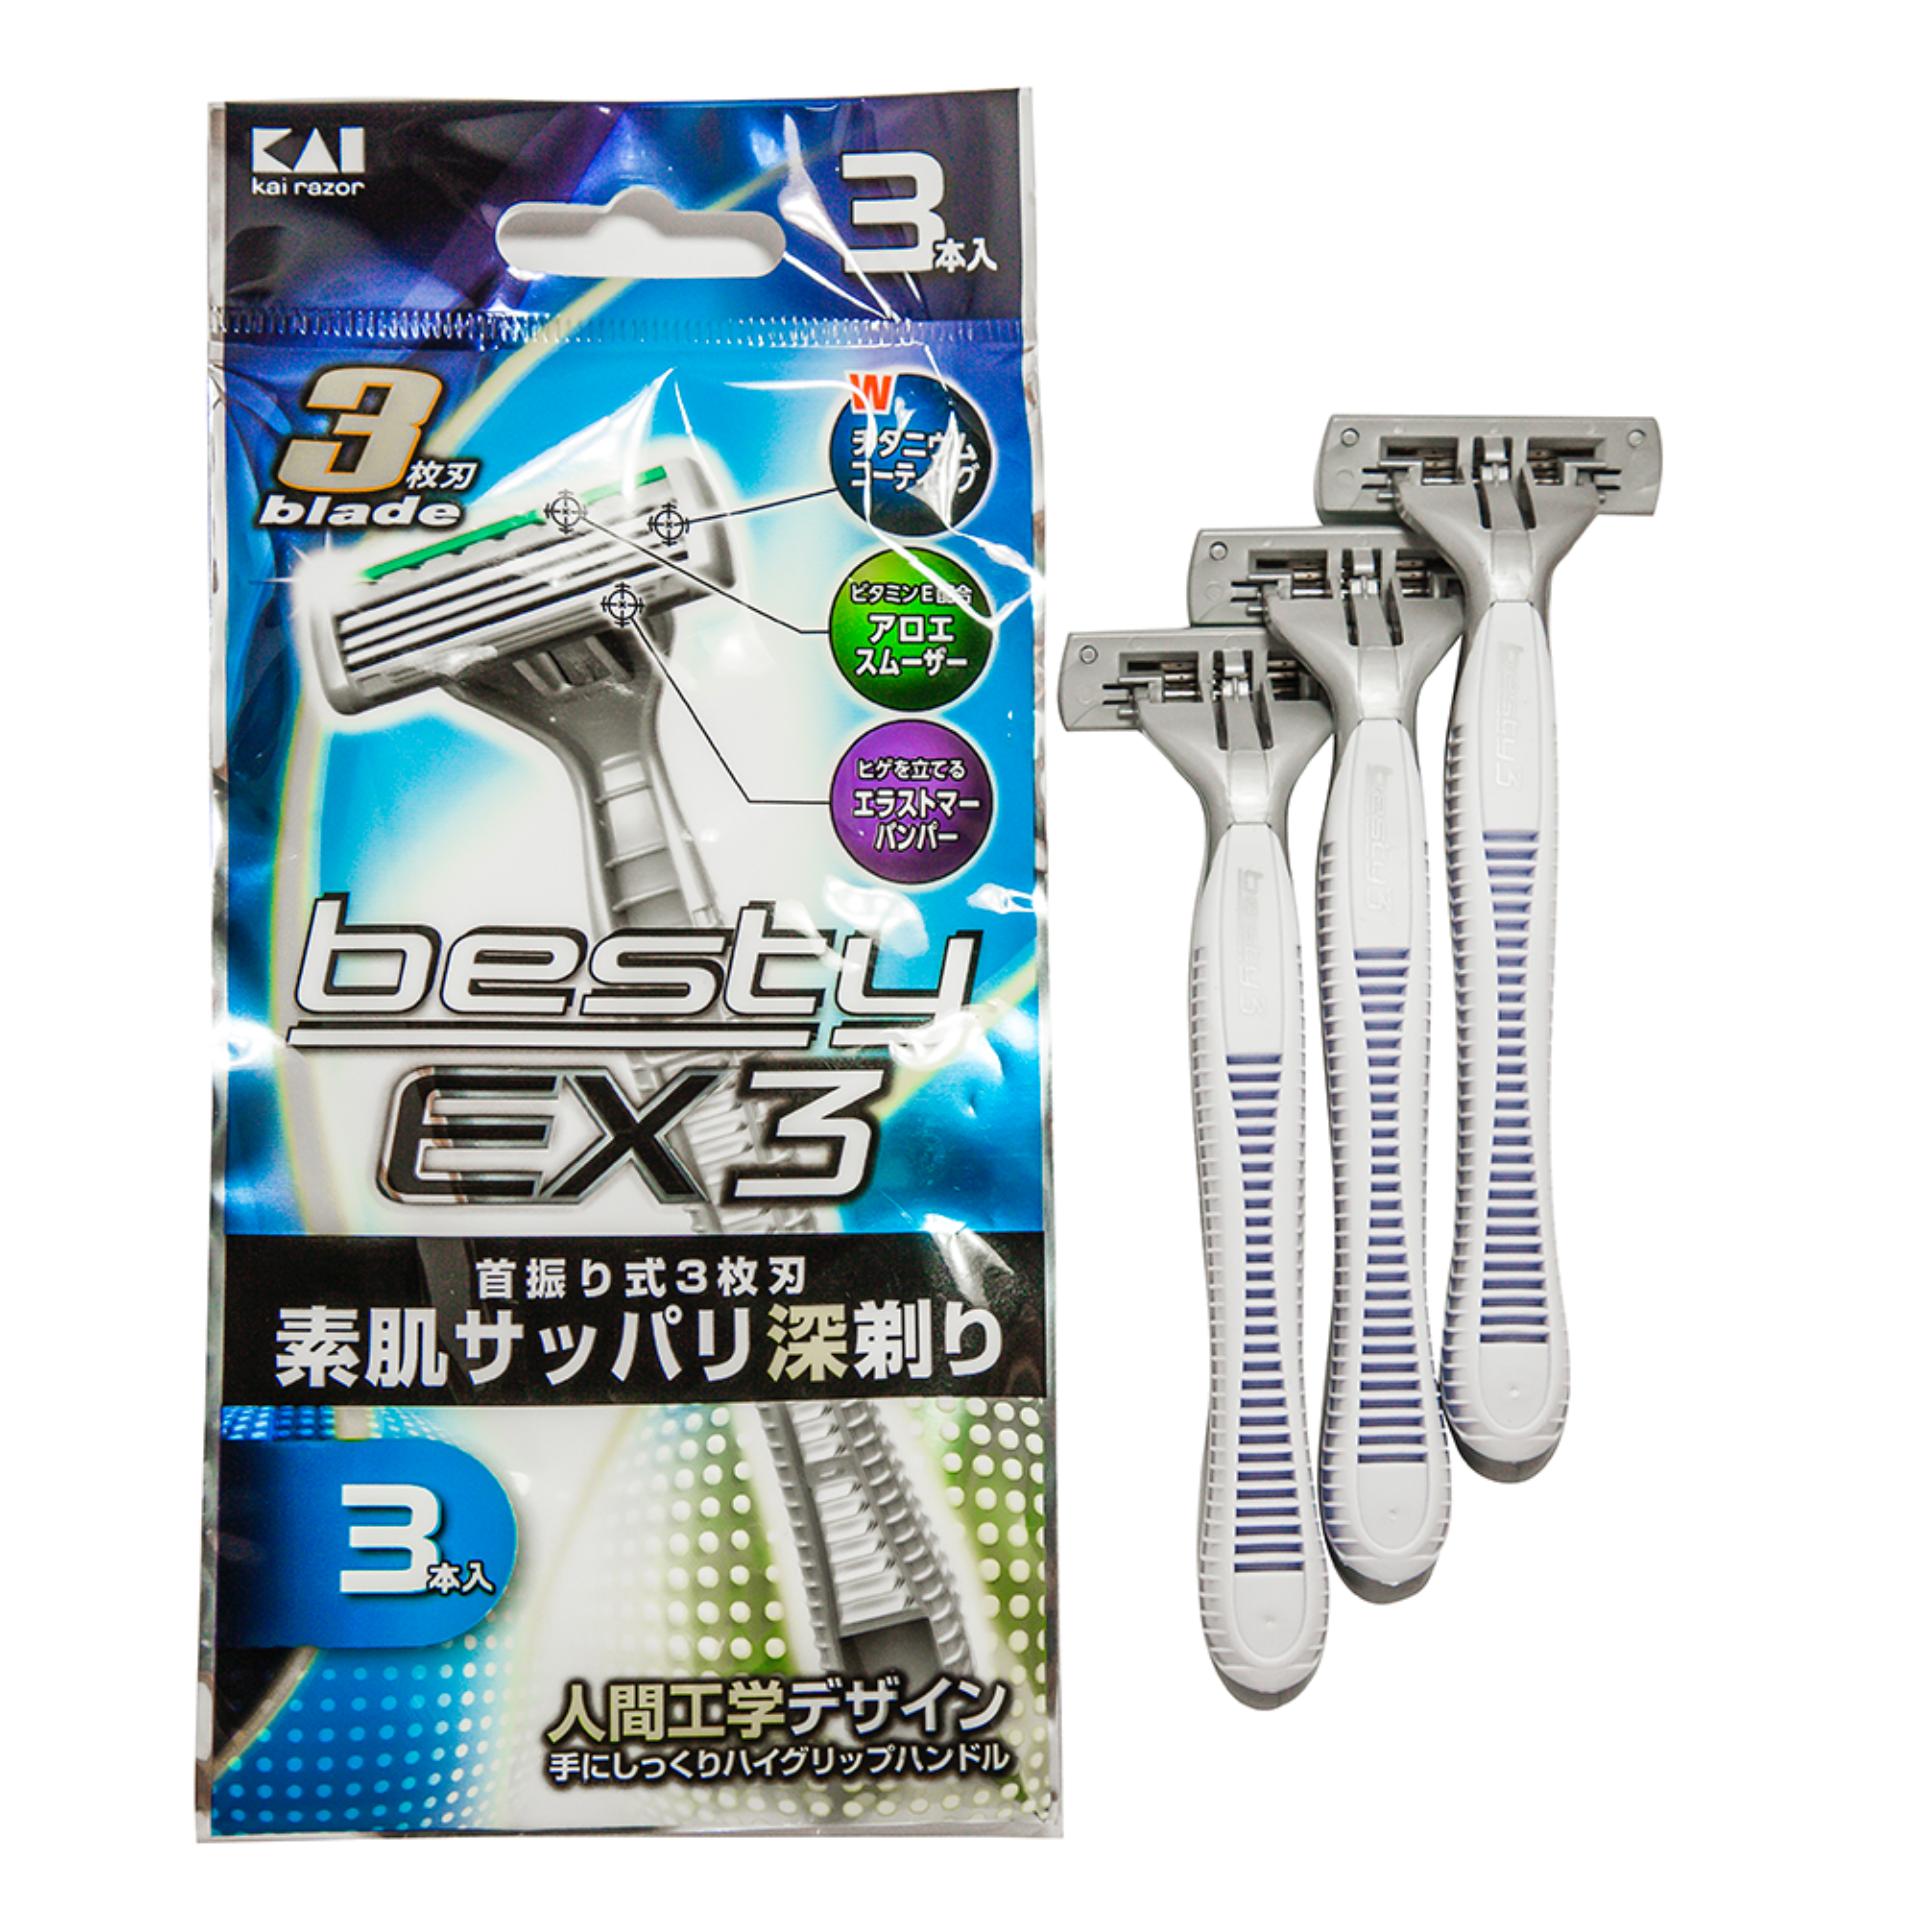 Dao cạo râu Nhật Bản 3 lưỡi Besty EX3 ( gói 3 chiếc)